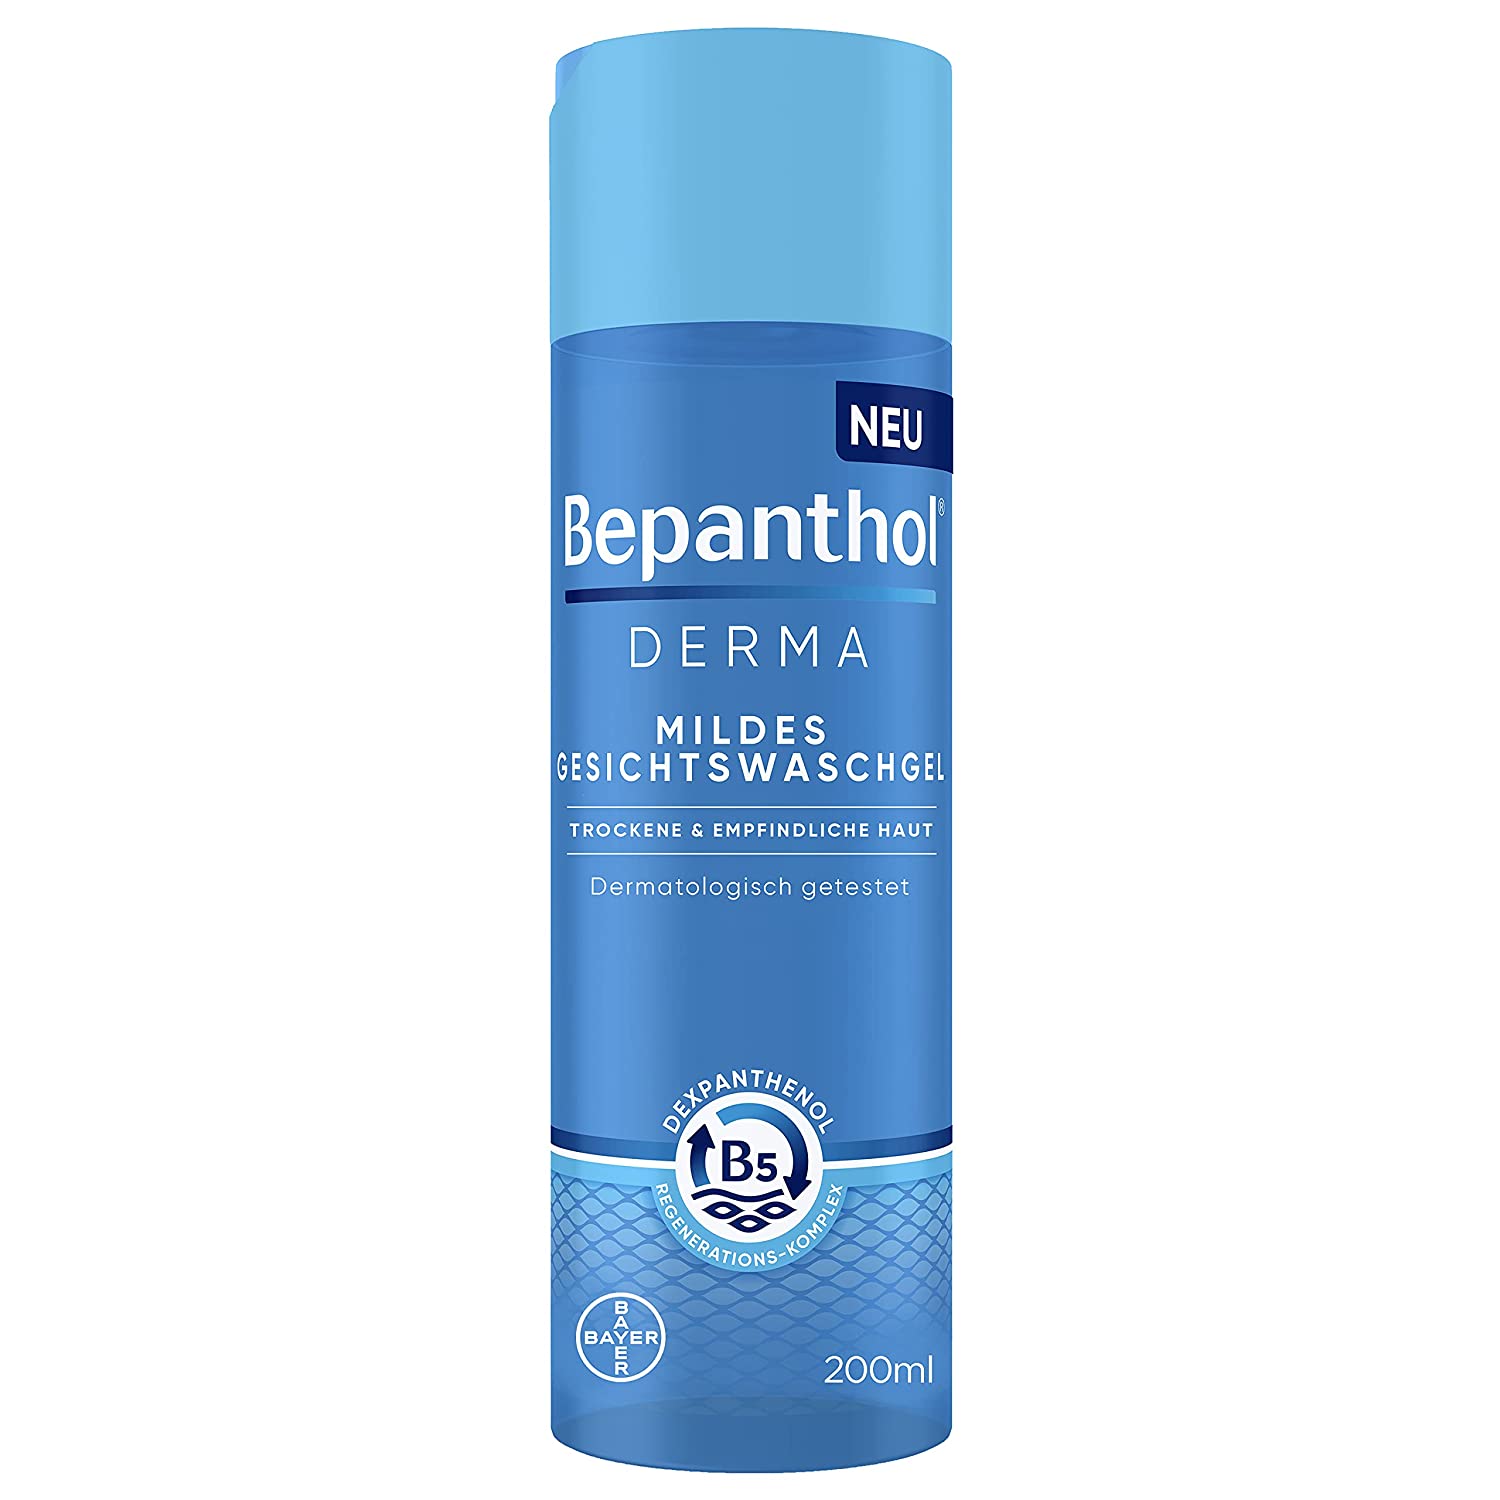 bepanthol Bepanthol® DERMA Mildes Gesichtswaschgel für empfindliche und trockene Haut, dermatologisch getesteter Feuchtigkeitsspender mit Dexpanthenol, frei von Duftstoffen, seifenfrei, 200 ml Flasche